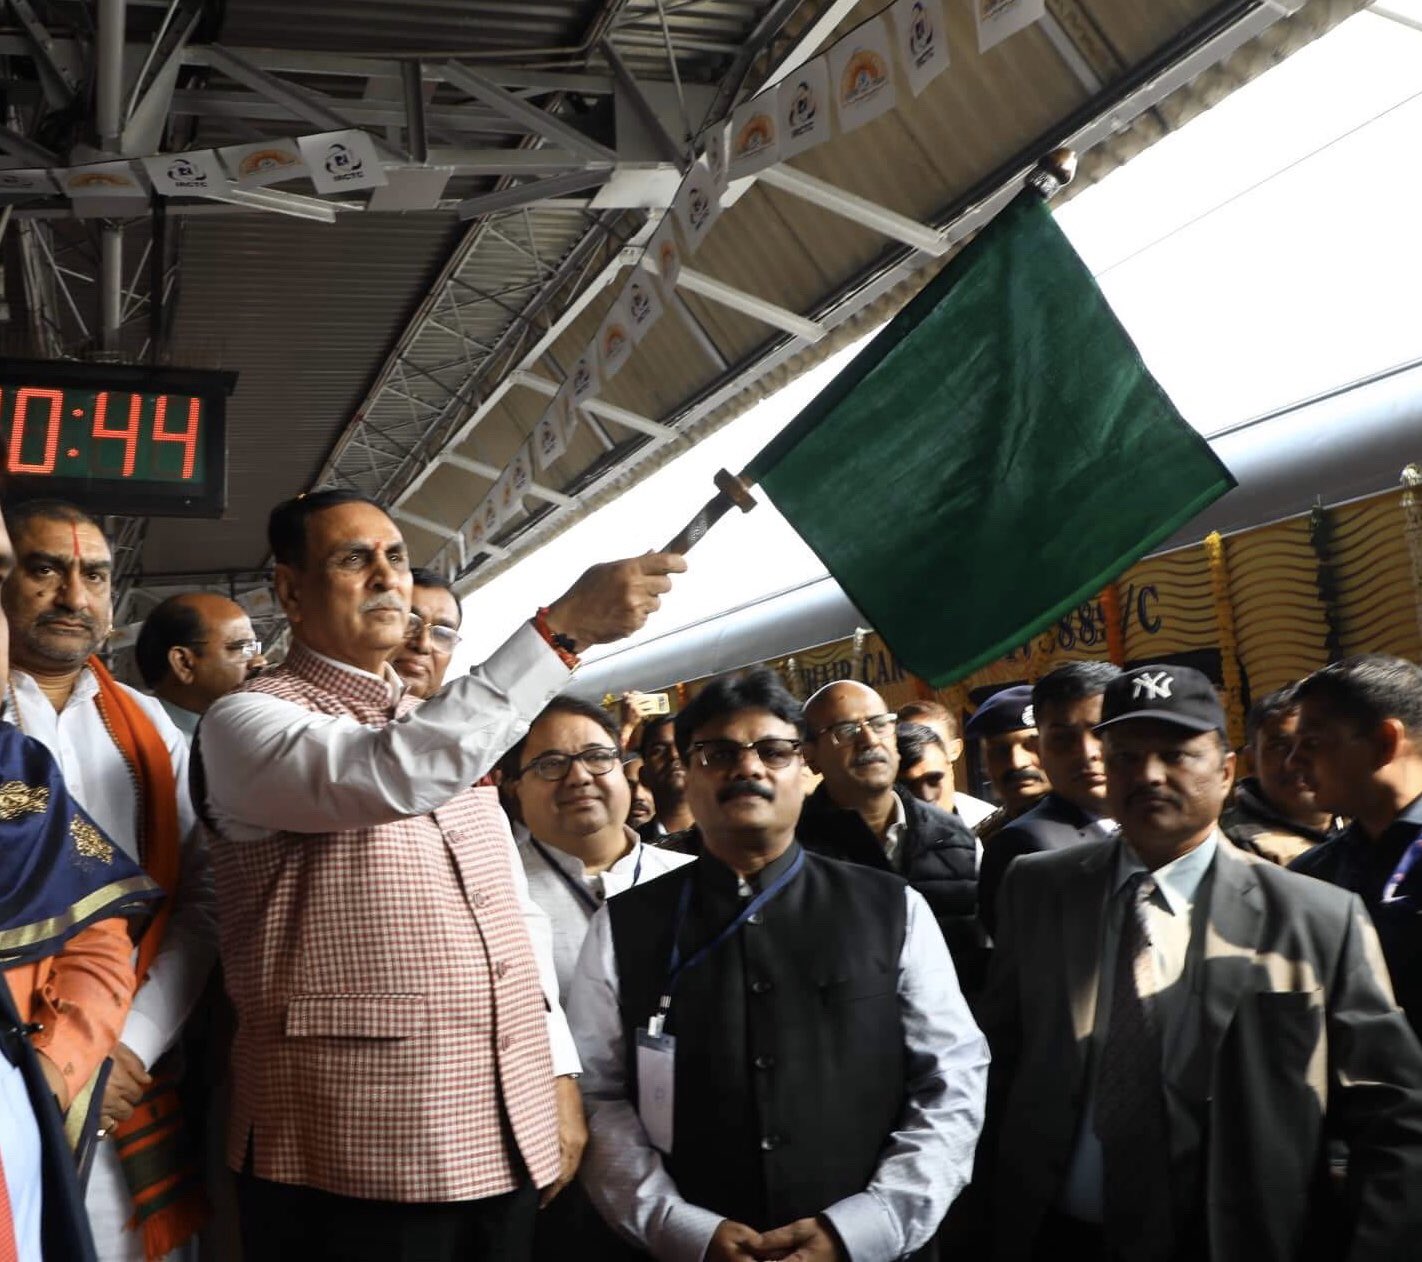 गुजरातचे मुख्यमंत्री विजय रूपाणी यांनी शुक्रवारी अहमदाबाद - मुंबई तेजस एक्स्प्रेसला हिरवा झेंडा दाखवला. (फोटो सौजन्य : ट्विटर / विजय रूपाणी - गुजरातचे मुख्यमंत्री)